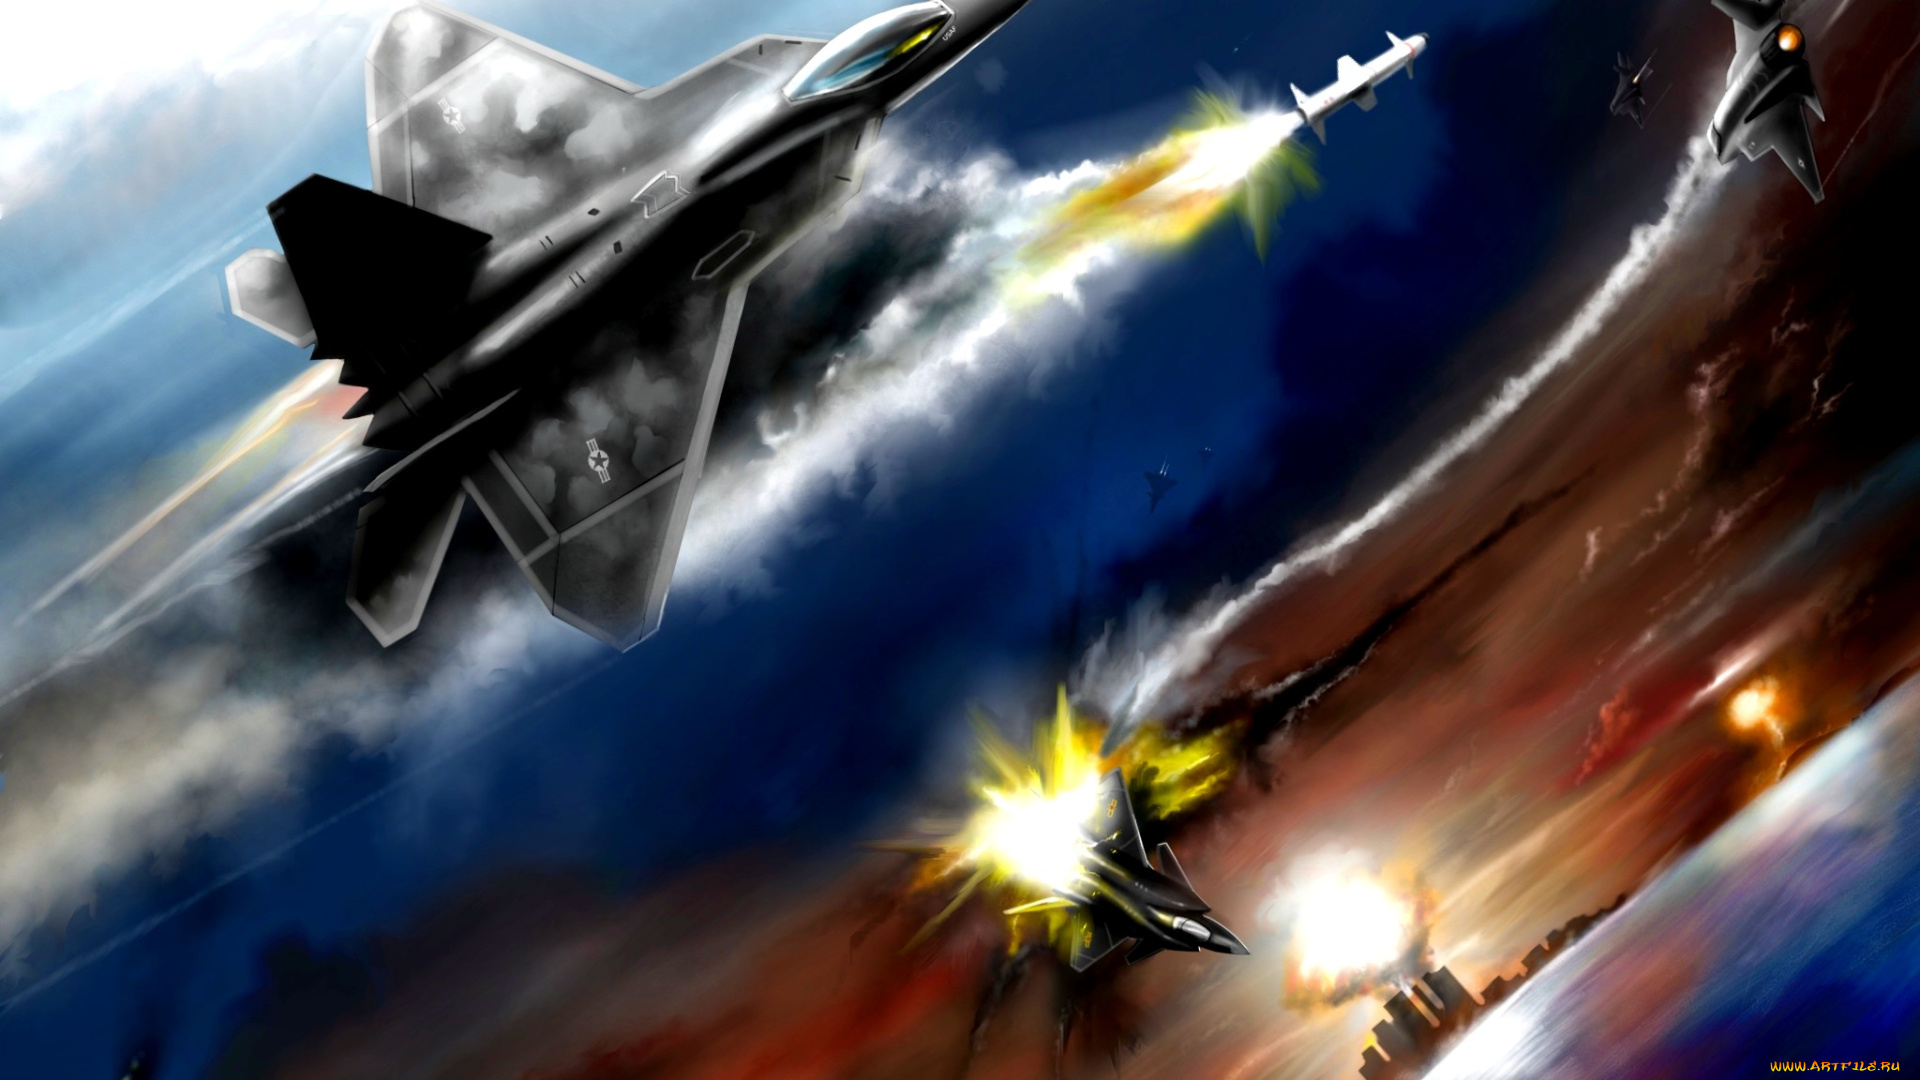 воздушная, битва, авиация, 3д, рисованые, v-graphic, битва, китай, сша, самолеты, f-22, j-20